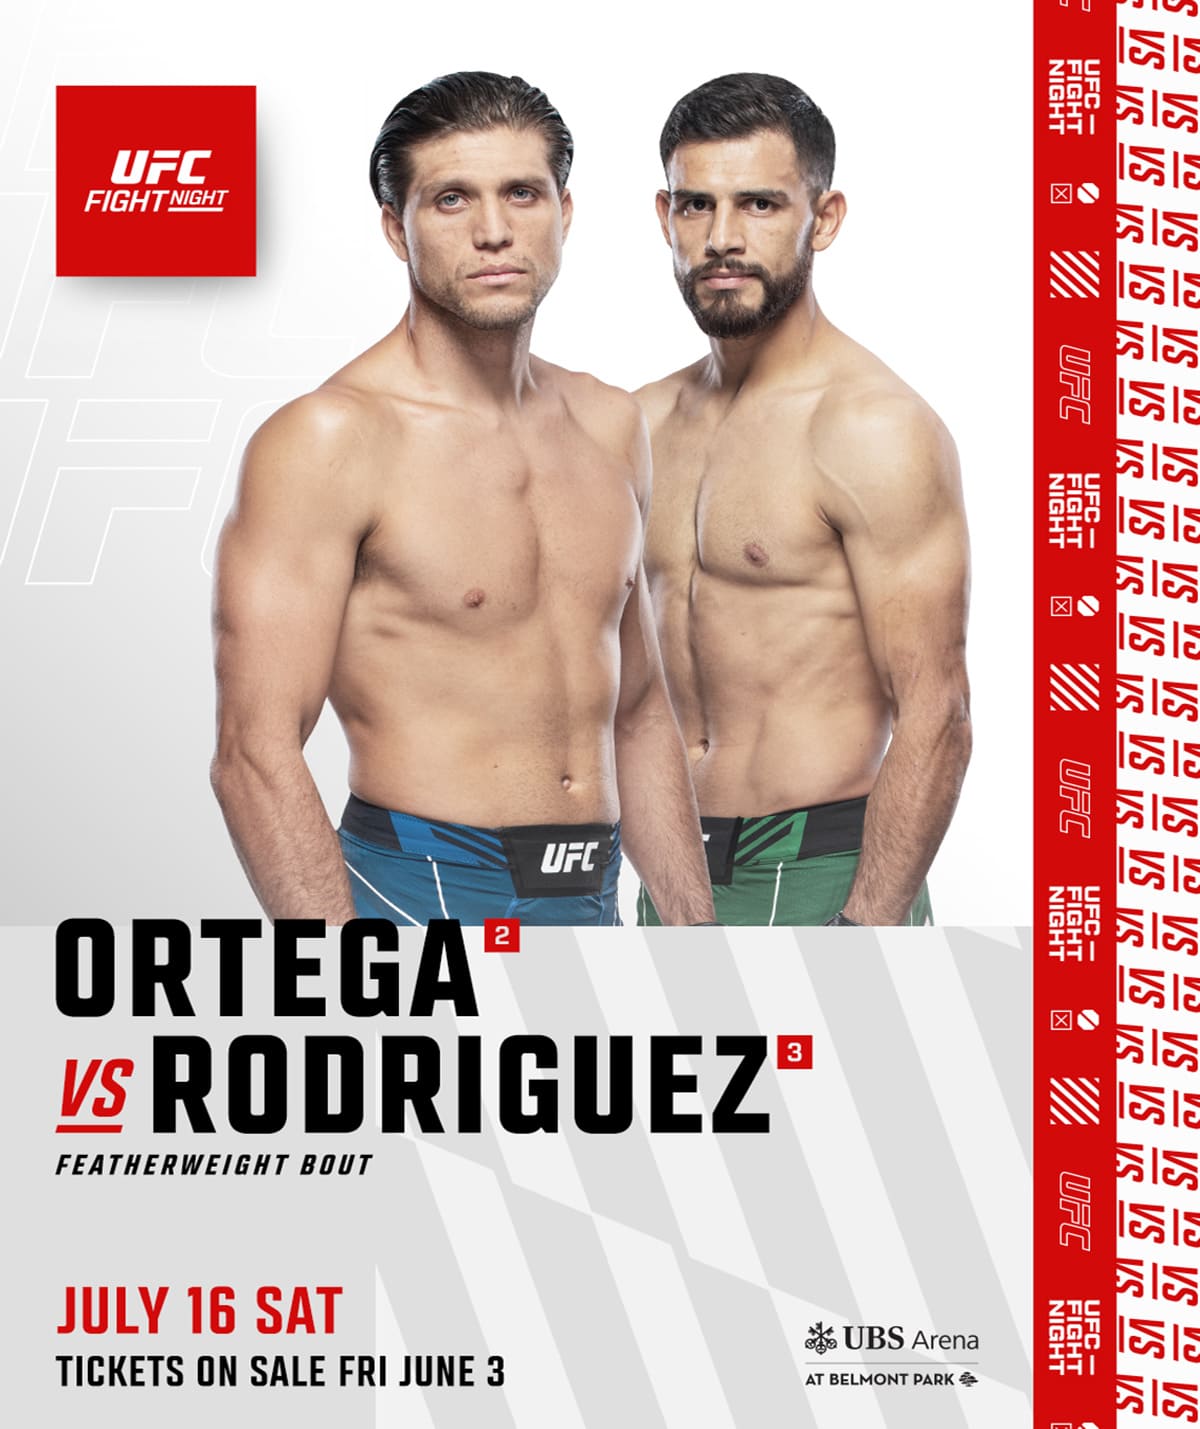 UFC on ABC 3: Ортега - Родригес дата проведения, кард, участники и результаты